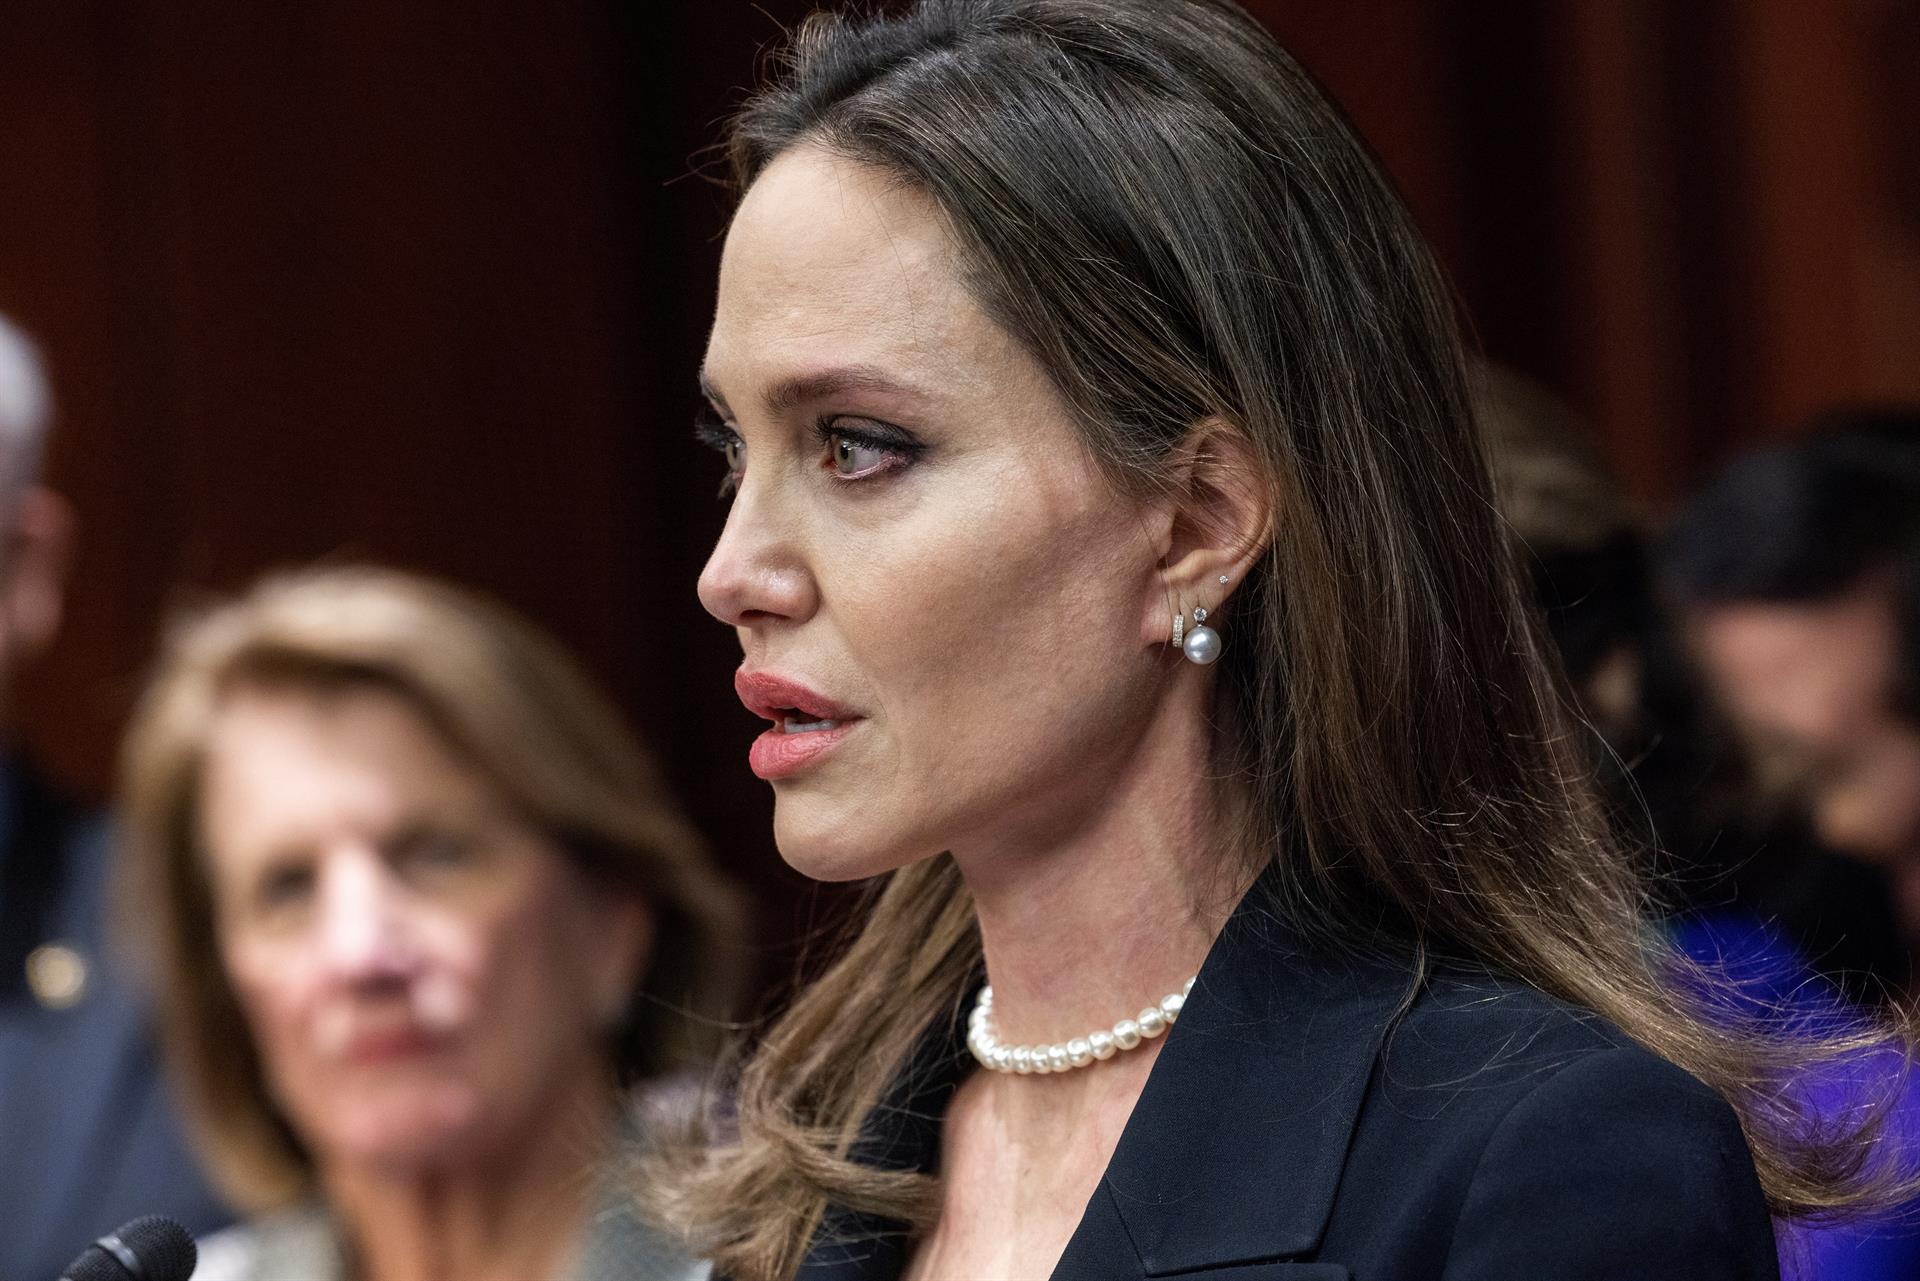 La emotiva y contundente aparición de Angelina Jolie en el Senado de EEUU (FOTOS)